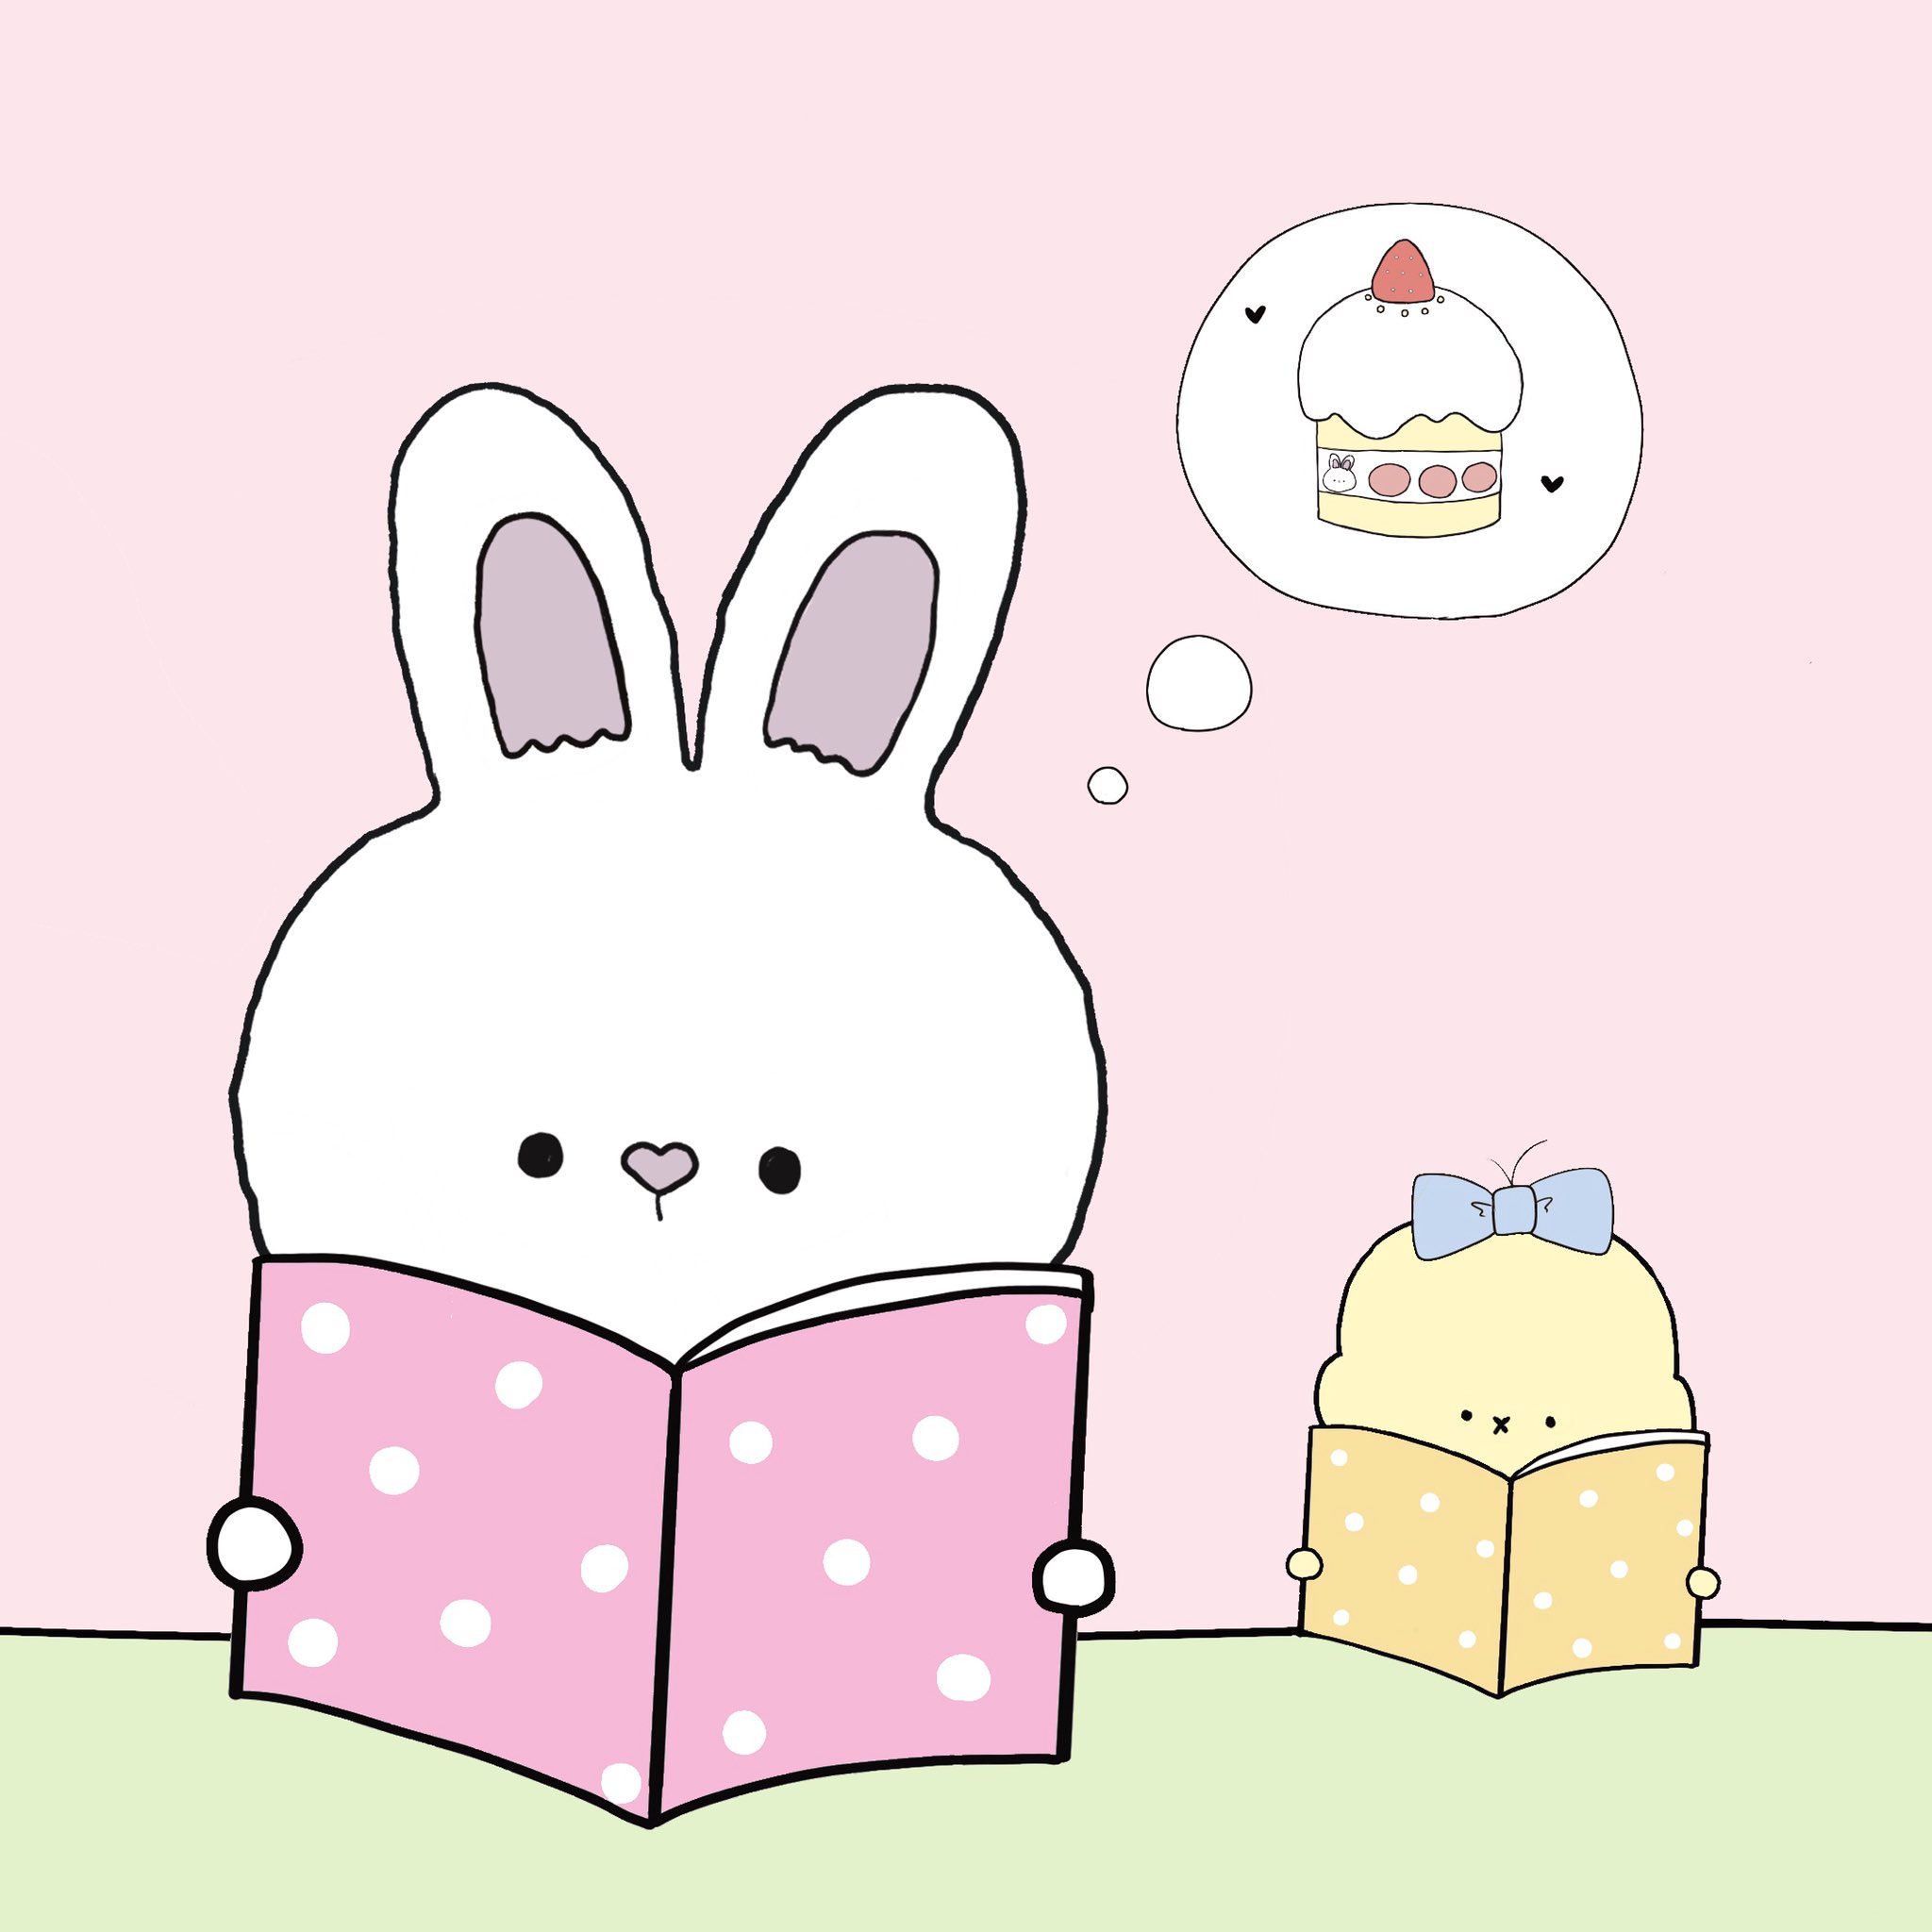 あかりん Peach Puff Bunny しんけんに読んでいるかな 朗読の日 ゆるいイラスト イラスト イラスト好きな人と繋がりたい うさぎ うさぎ好きさんと繋がりたい うさぎ好き 動物好き Bunny Cafe Illustration Artwork 可愛いと思ったらrt